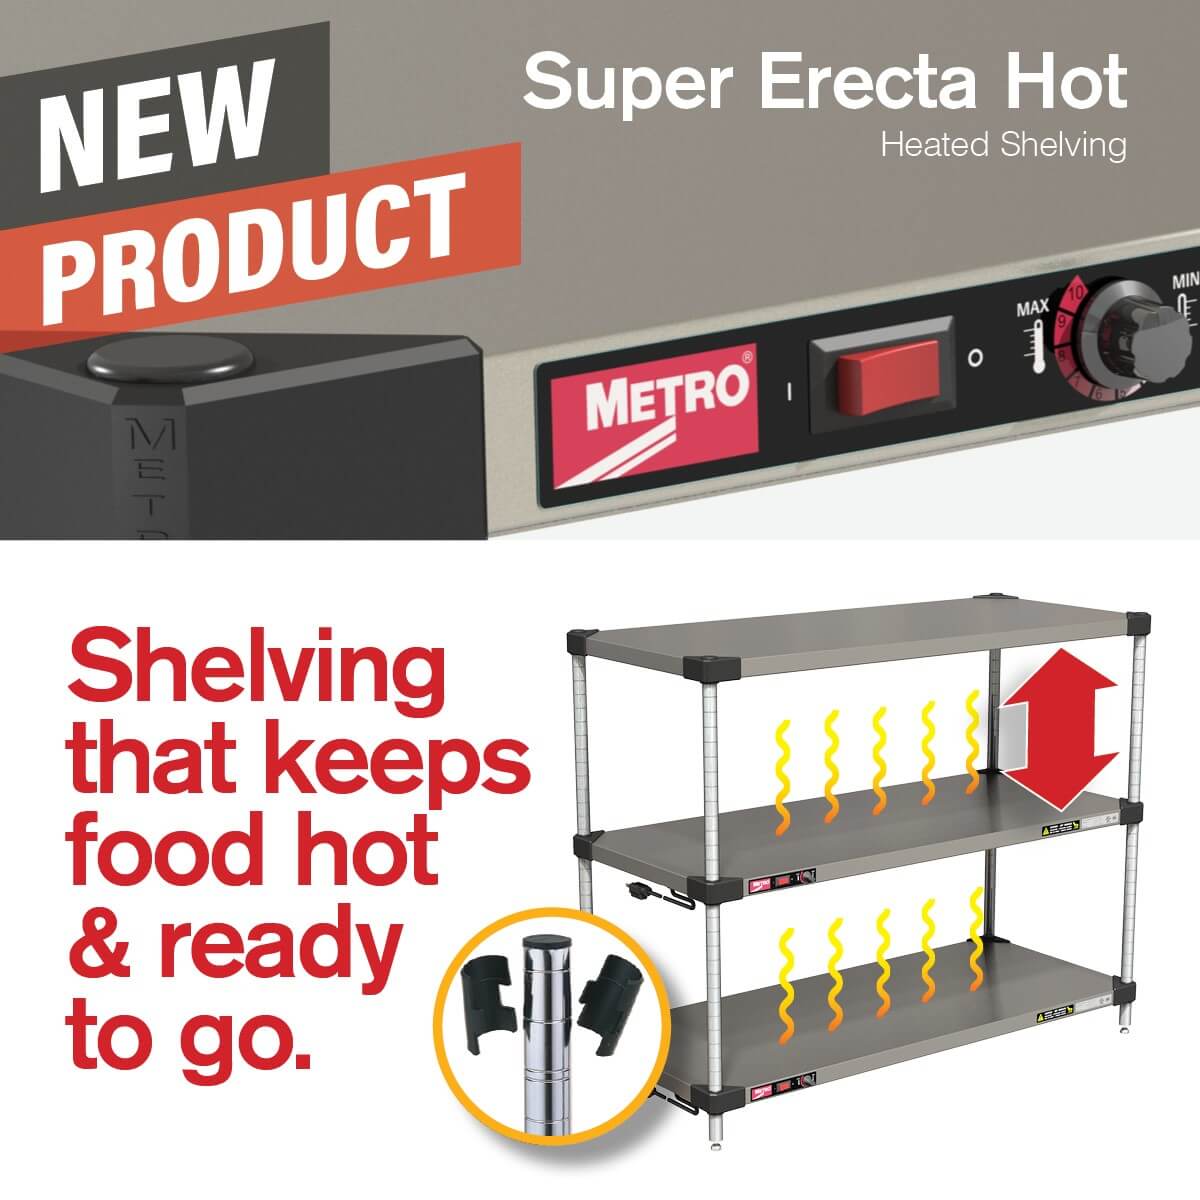 Metro super-erecta hot